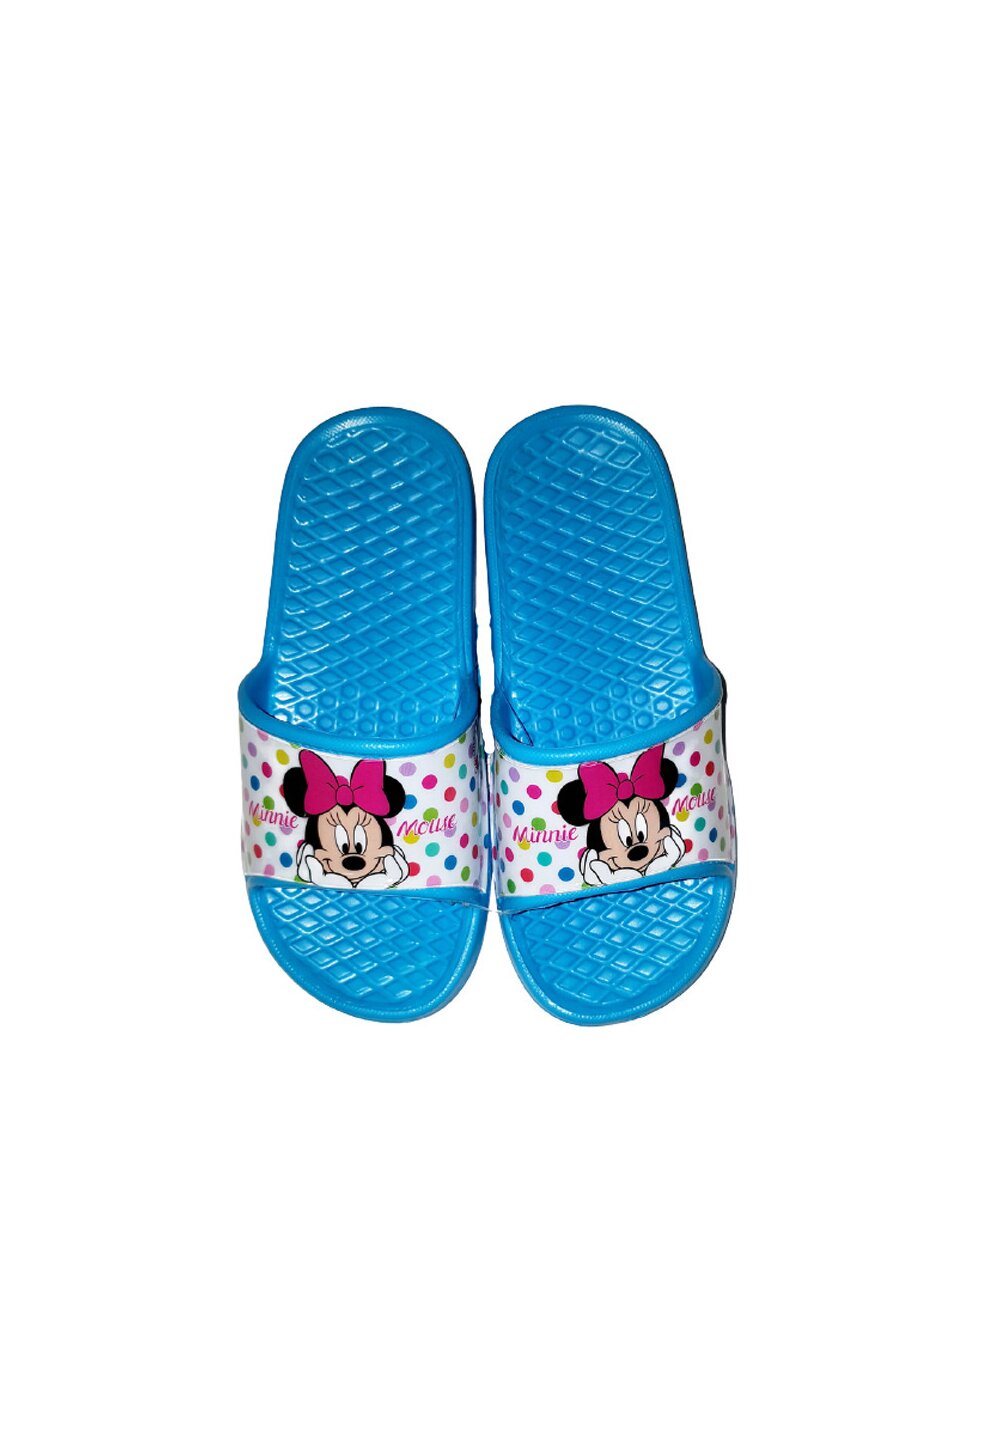 Papuci, Minnie Mouse, albastri cu buline albastri